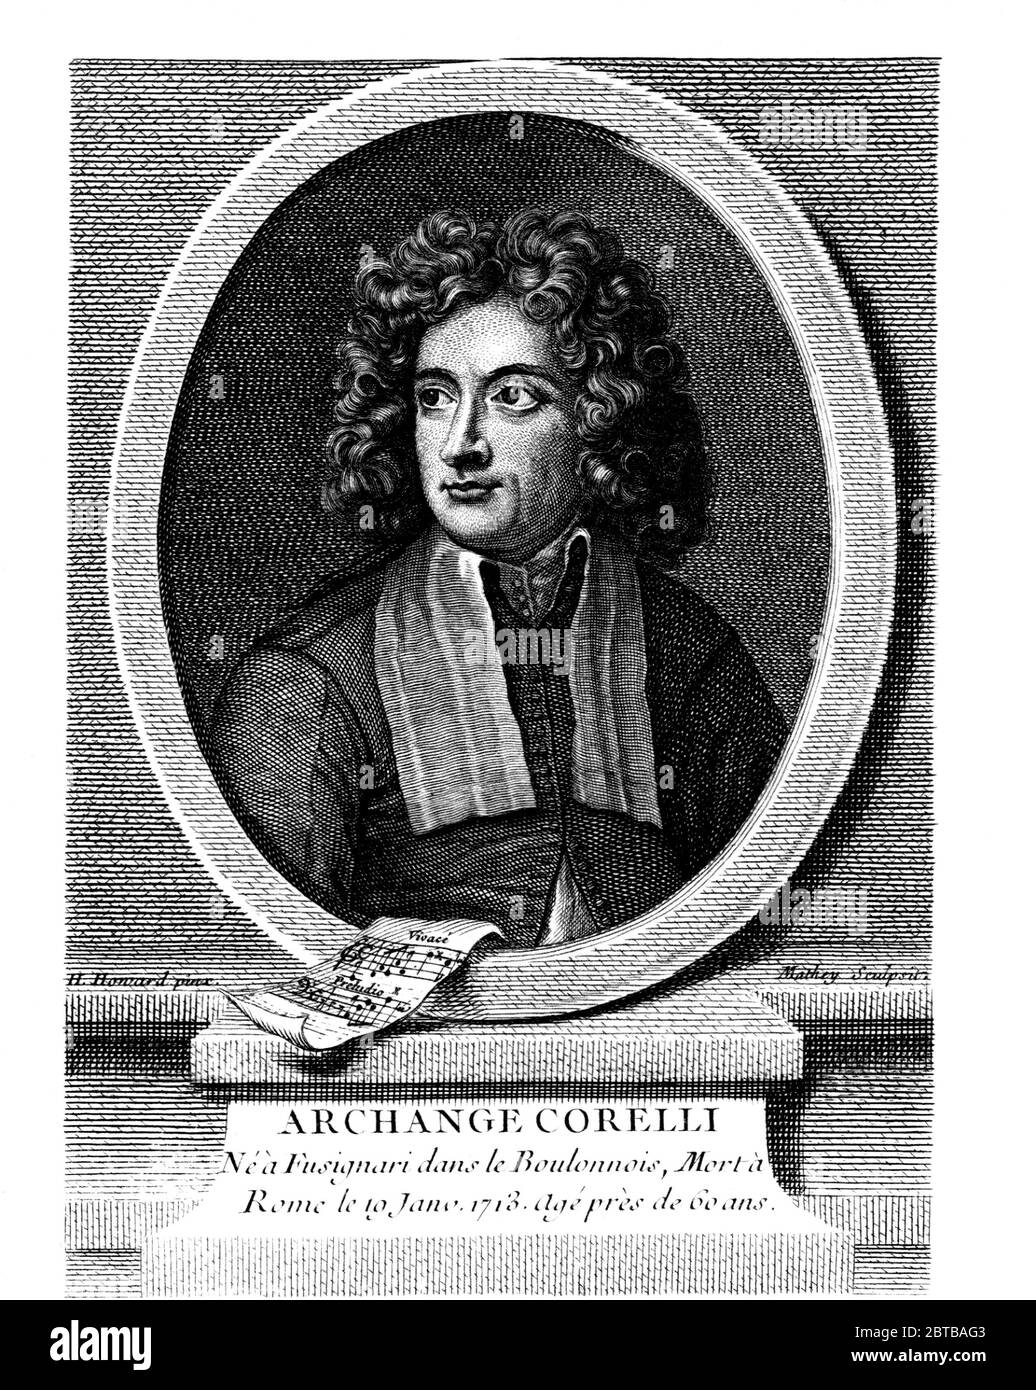 1710 c, ITALIA : il compositore musicale italiano ARCANGELO CORELLI ( 1653 - 1713 ). Ritratto di H. Howard , inciso da Mathey, 1786 . - MUSICA CLASSICA BAROCCA - BAROCCO - BAROCCO - CLASSICO - COMPOSITORE - ritratto - MUSICA - MUSICA - incisione - incisione - illustrazione ---- Archivio GBB Foto Stock